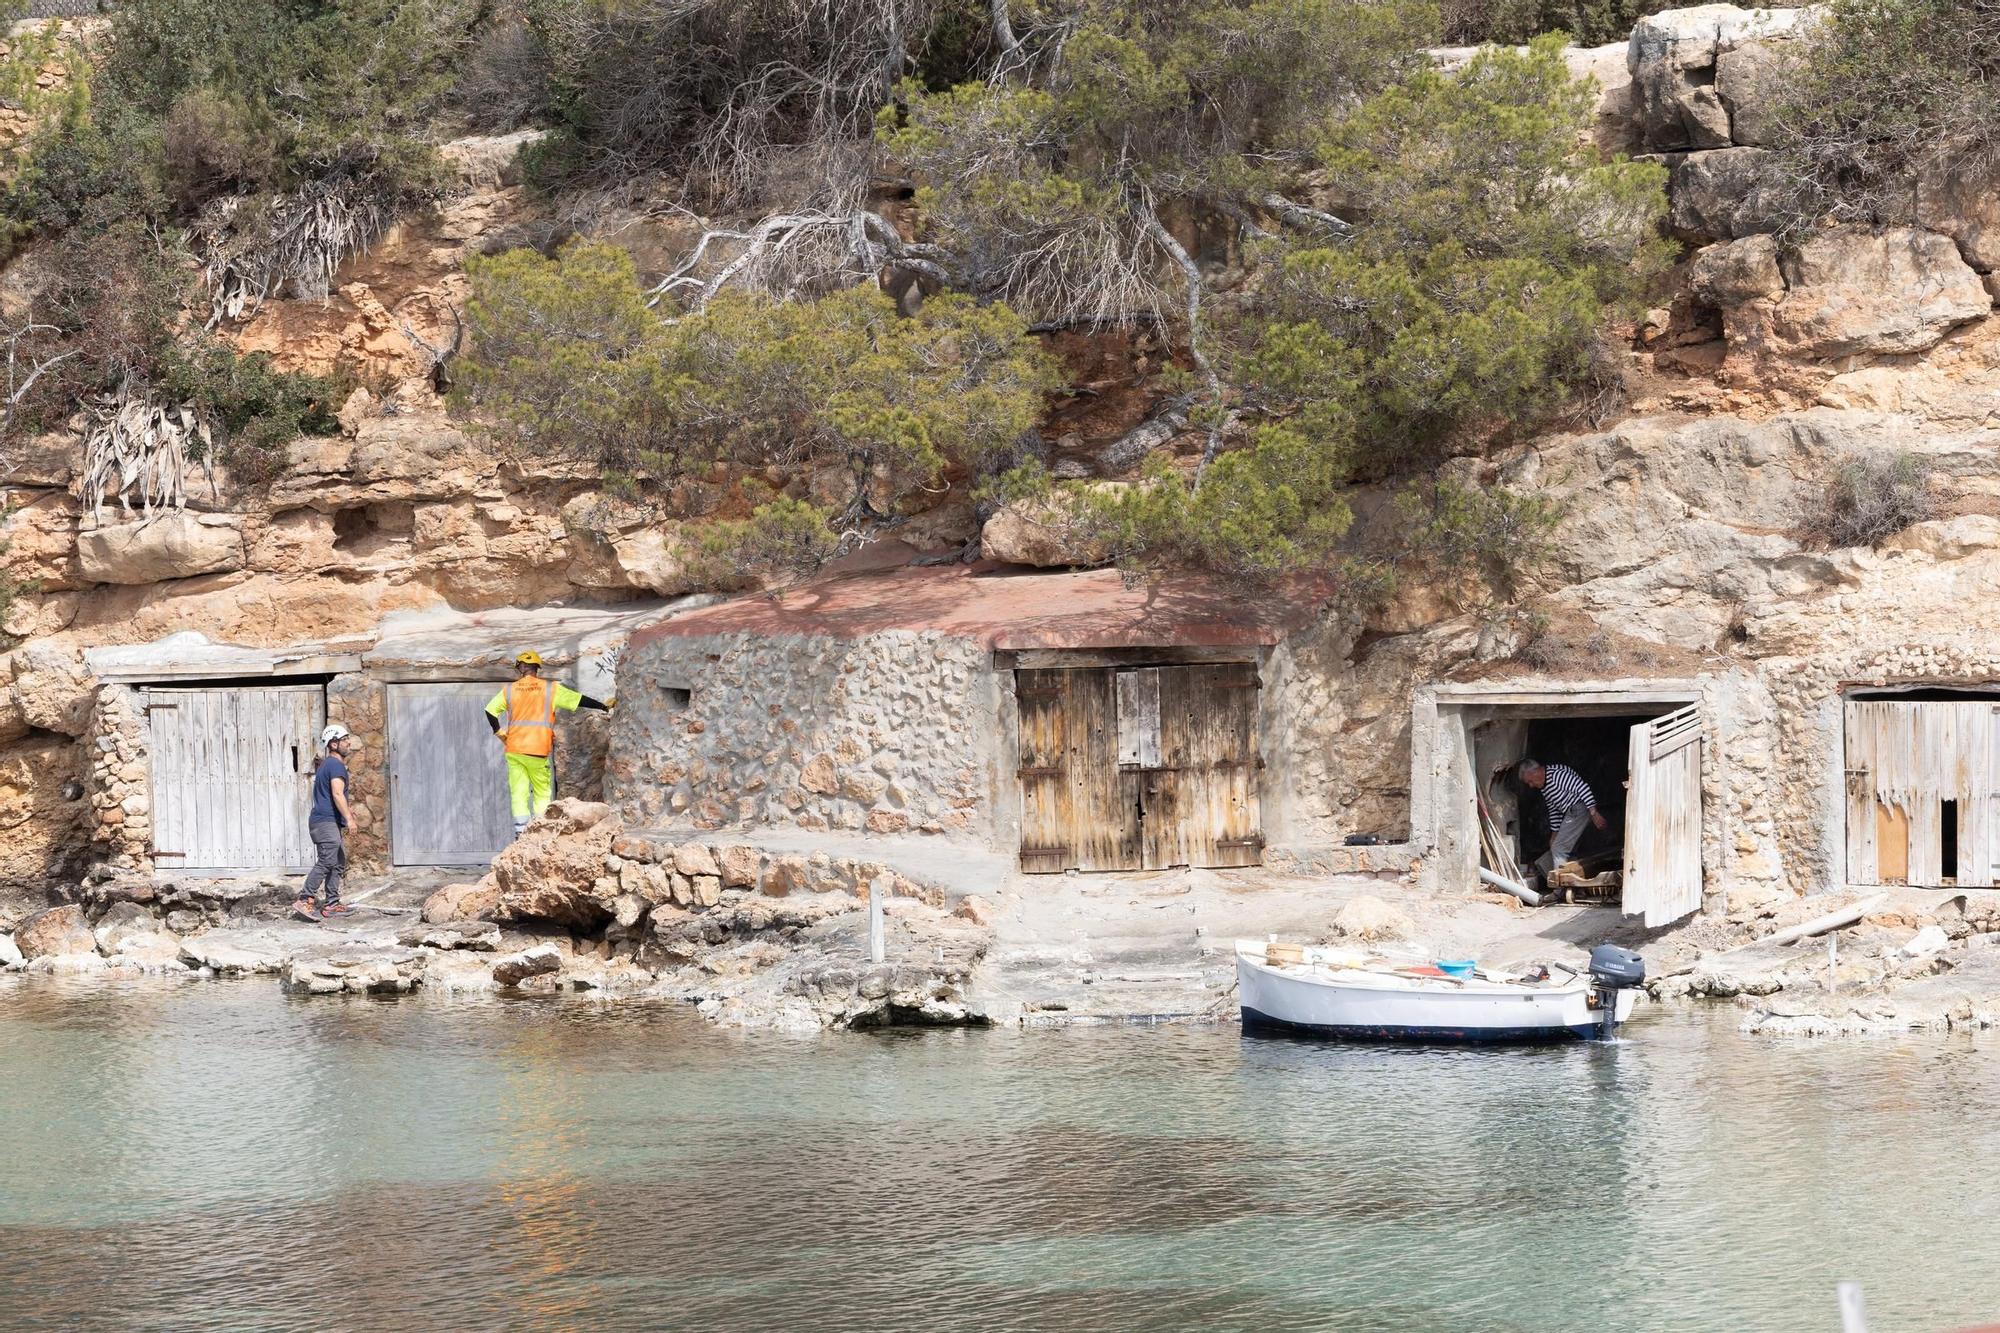 Galería: Inician los trabajos de protección de taludes de la playa de Cala Gració